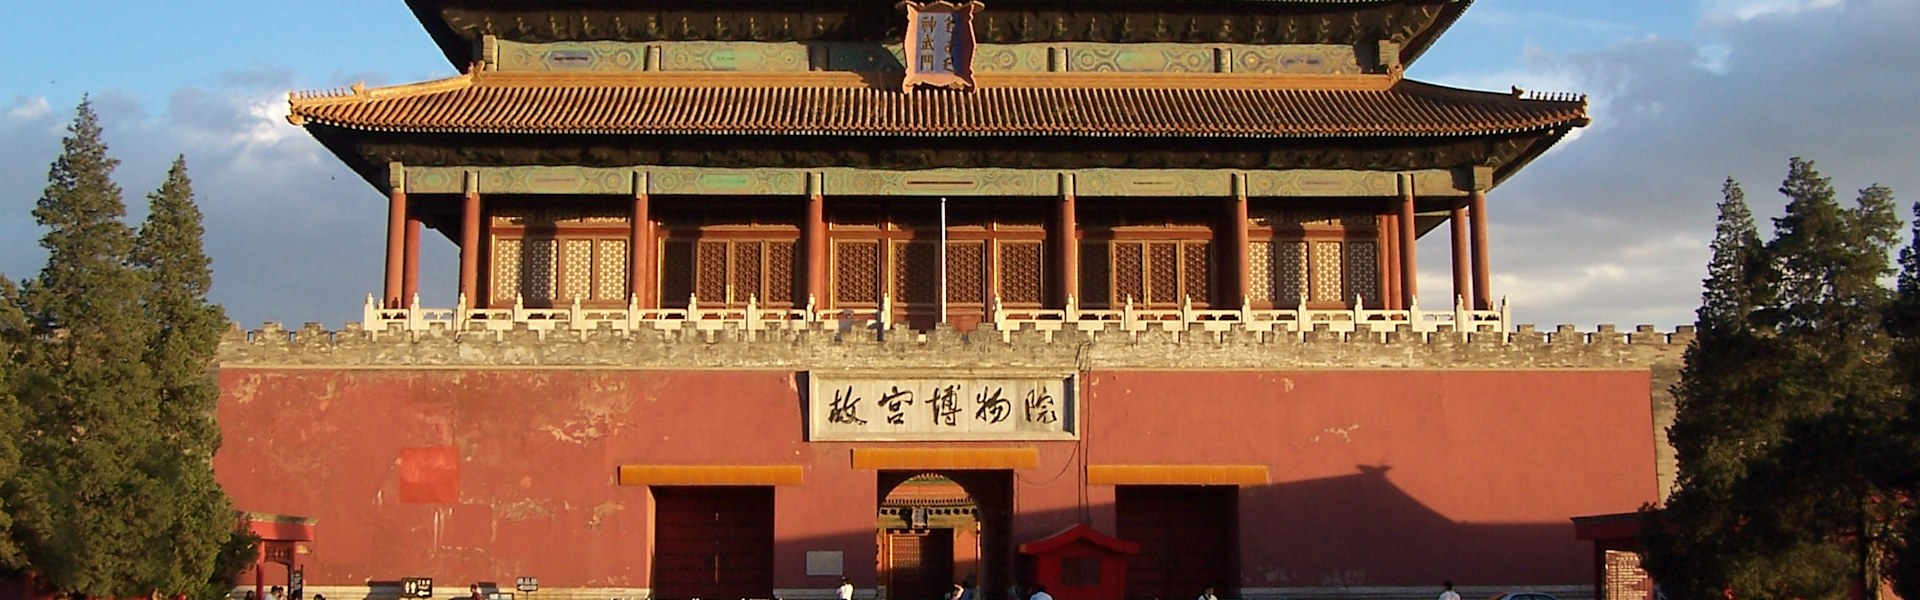 העיר האסורה בבייג'ינג, סין / צילום: ויקיפדיה